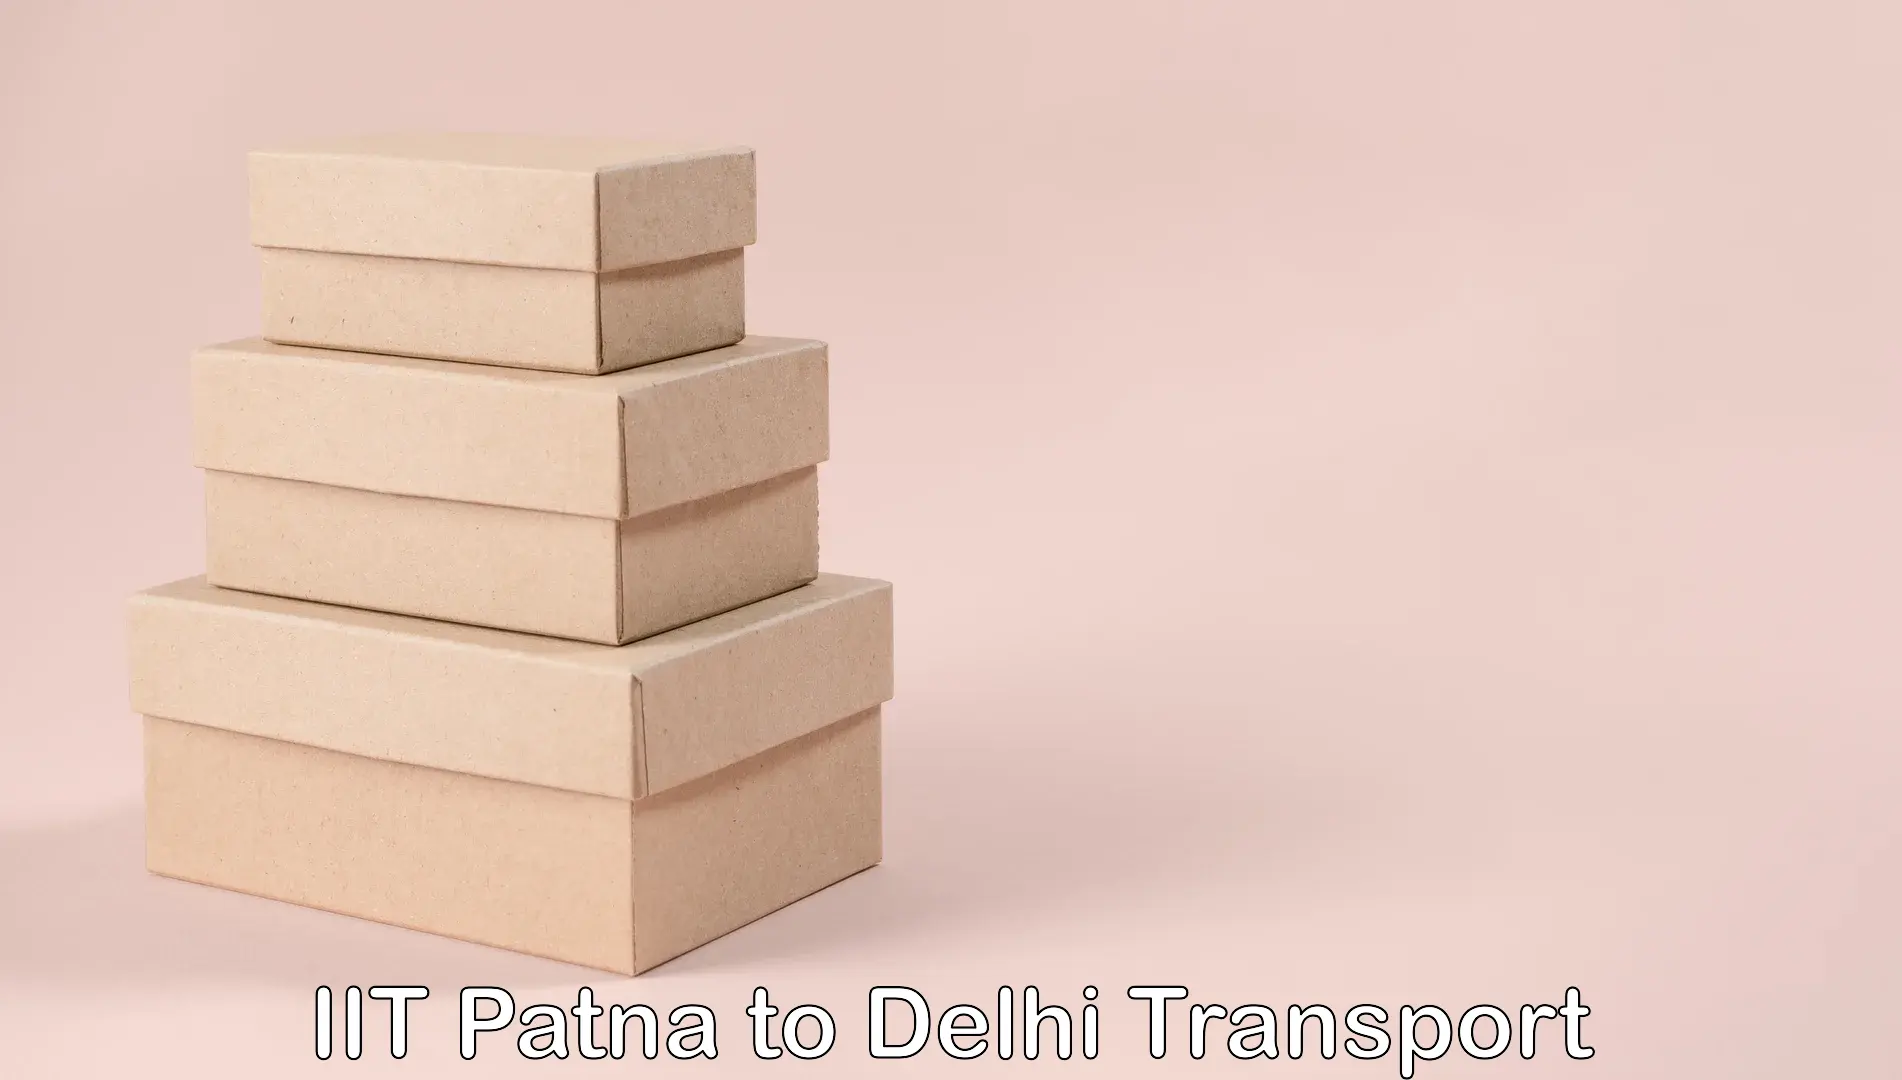 India truck logistics services IIT Patna to University of Delhi